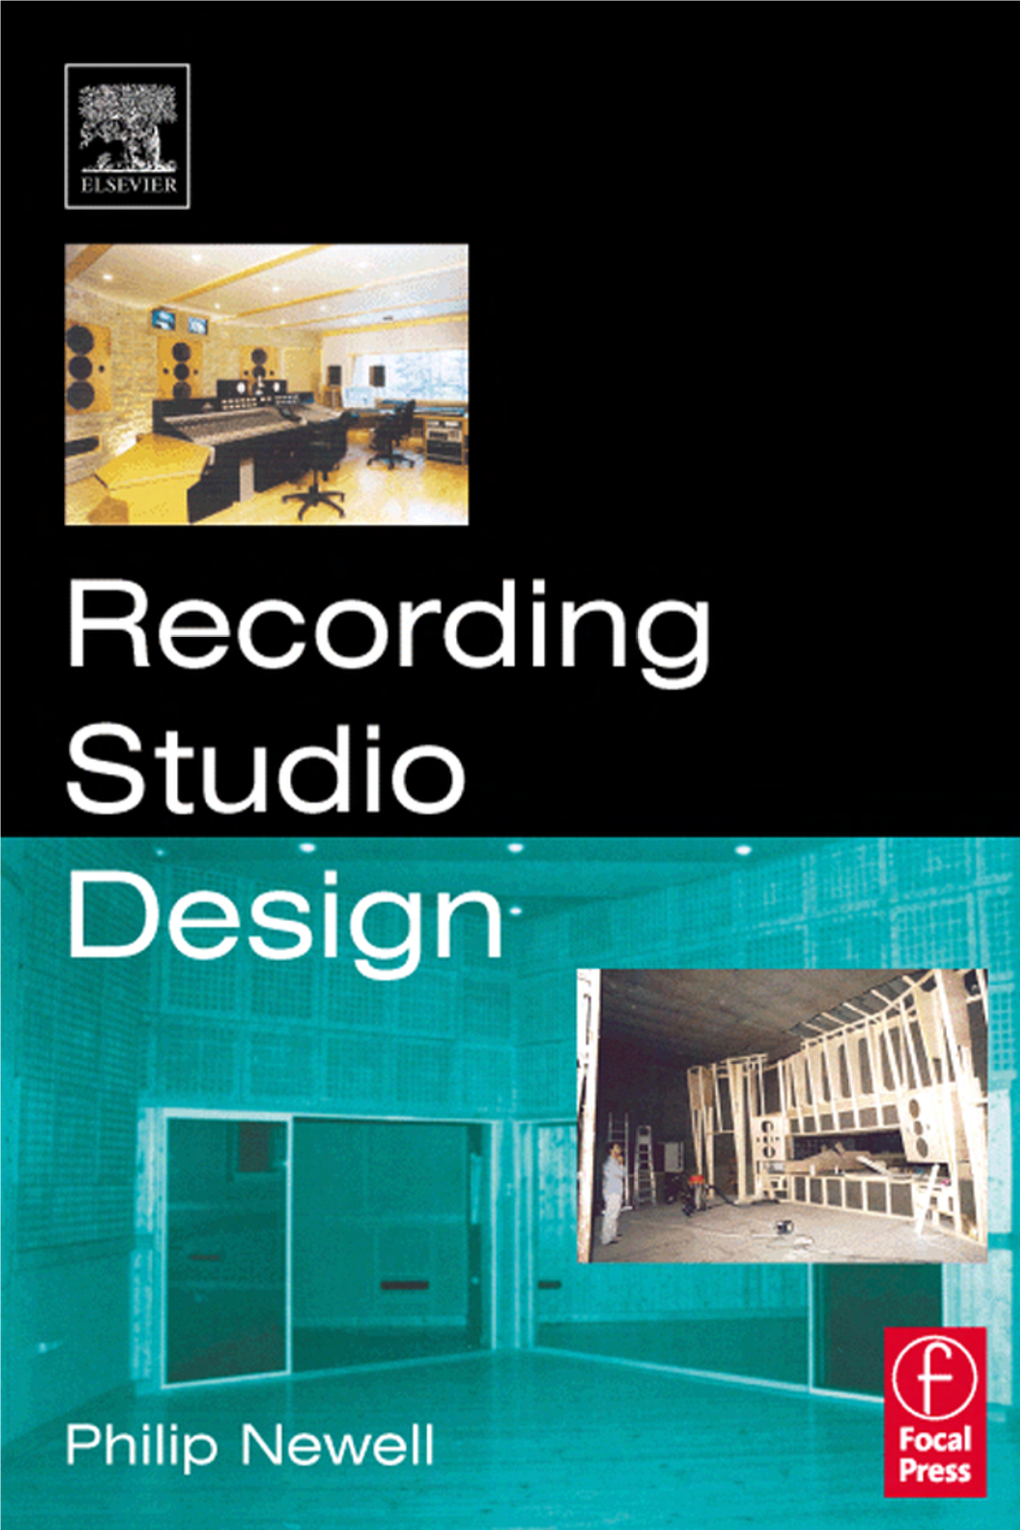 Recording Studio Design to Paul and Mum